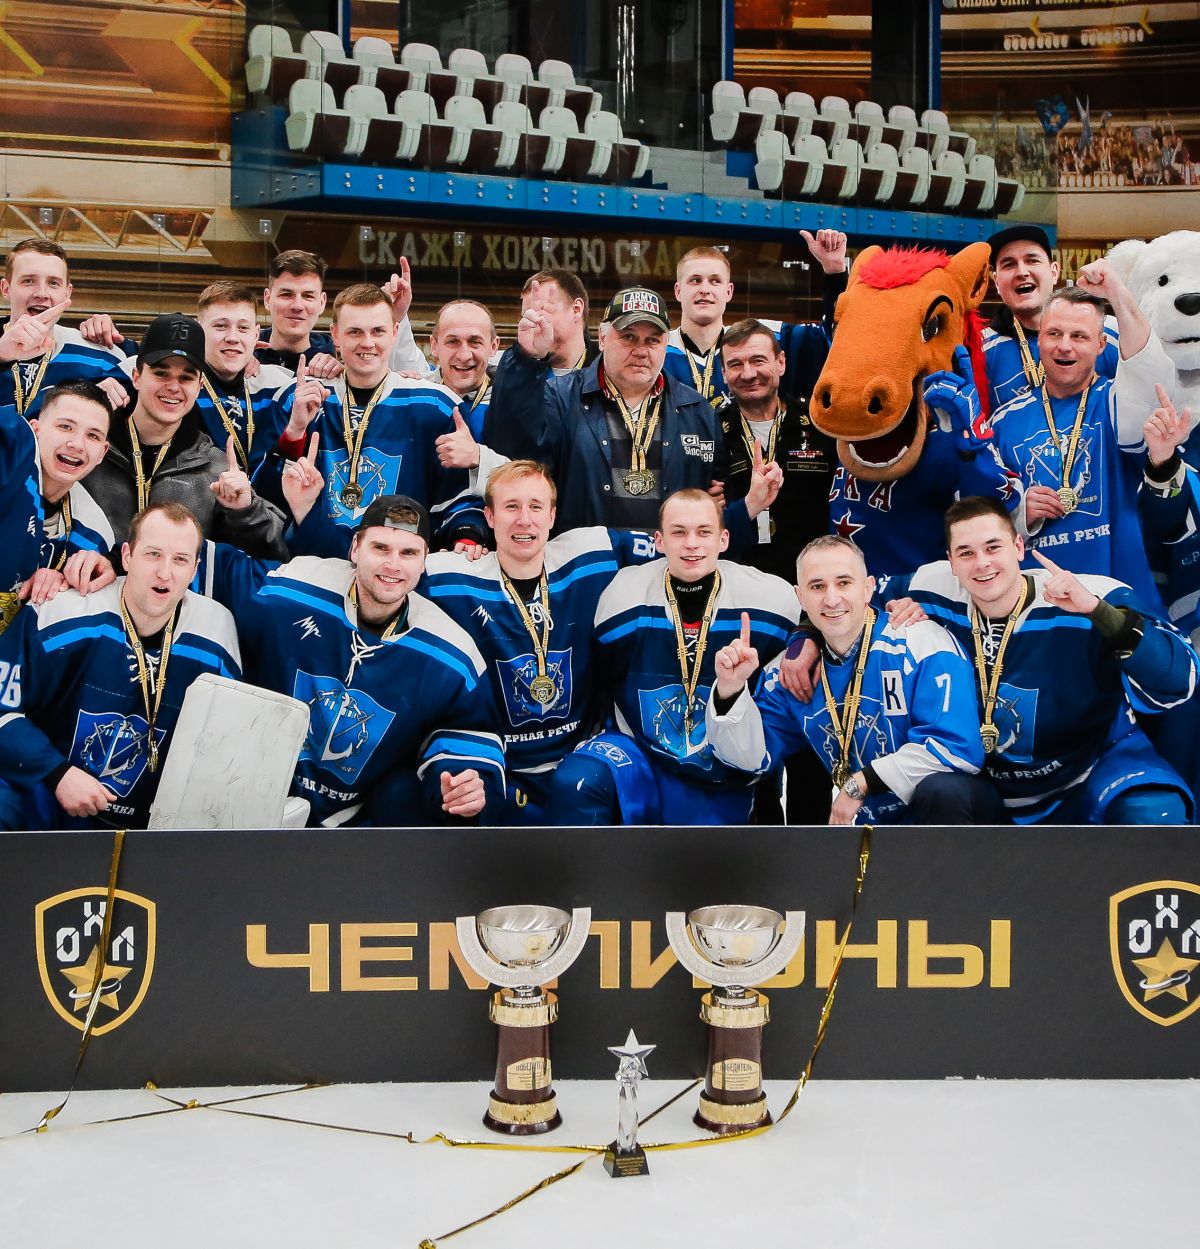 Определены чемпионы Офицерской хоккейной лиги в Санкт-Петербурге